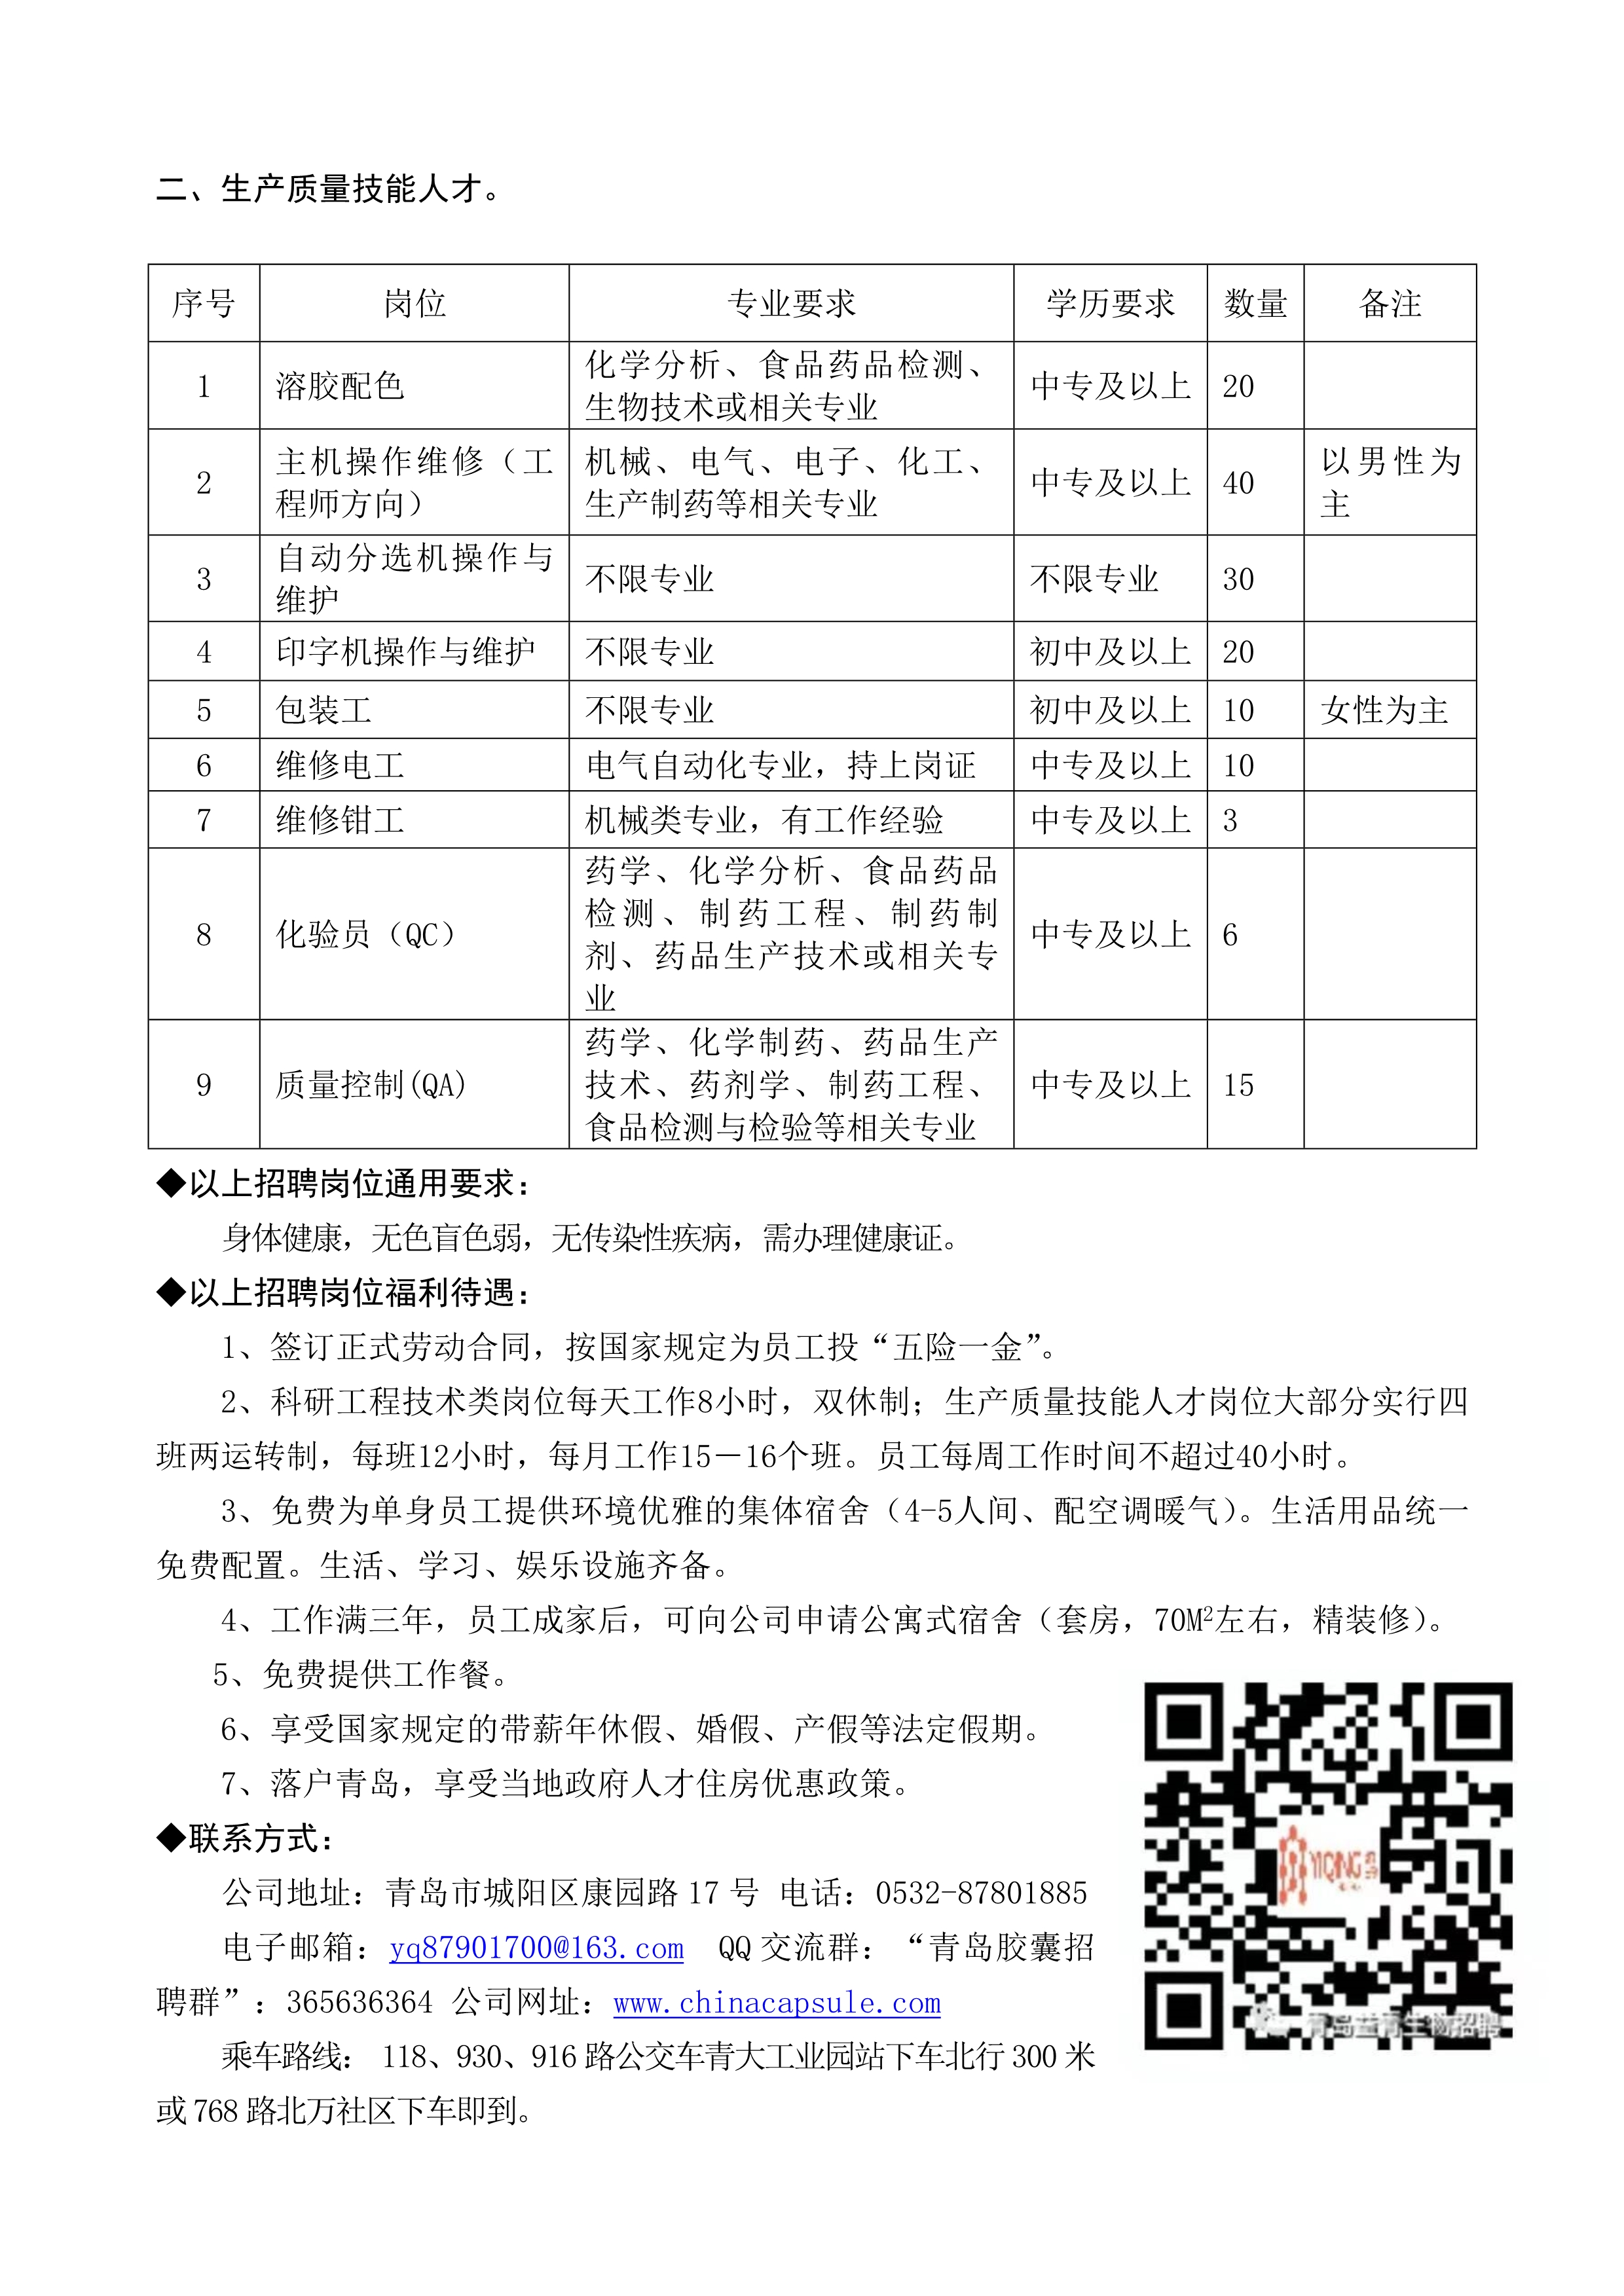 青島益青生物科技股份有限公司2022年招聘簡章_2.jpg